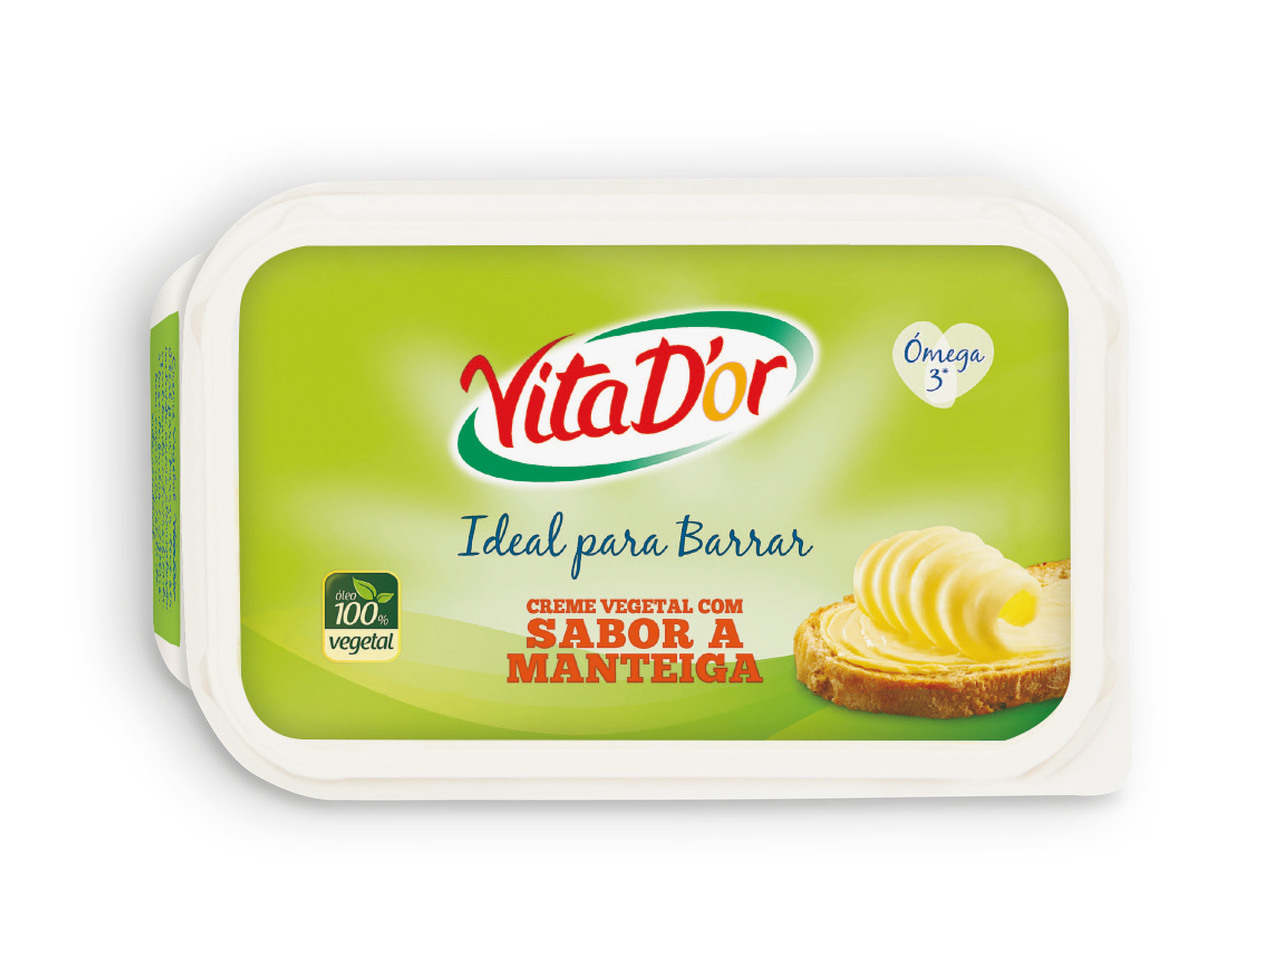 VITA D'OR(R) Creme Vegetal com Sabor a Manteiga